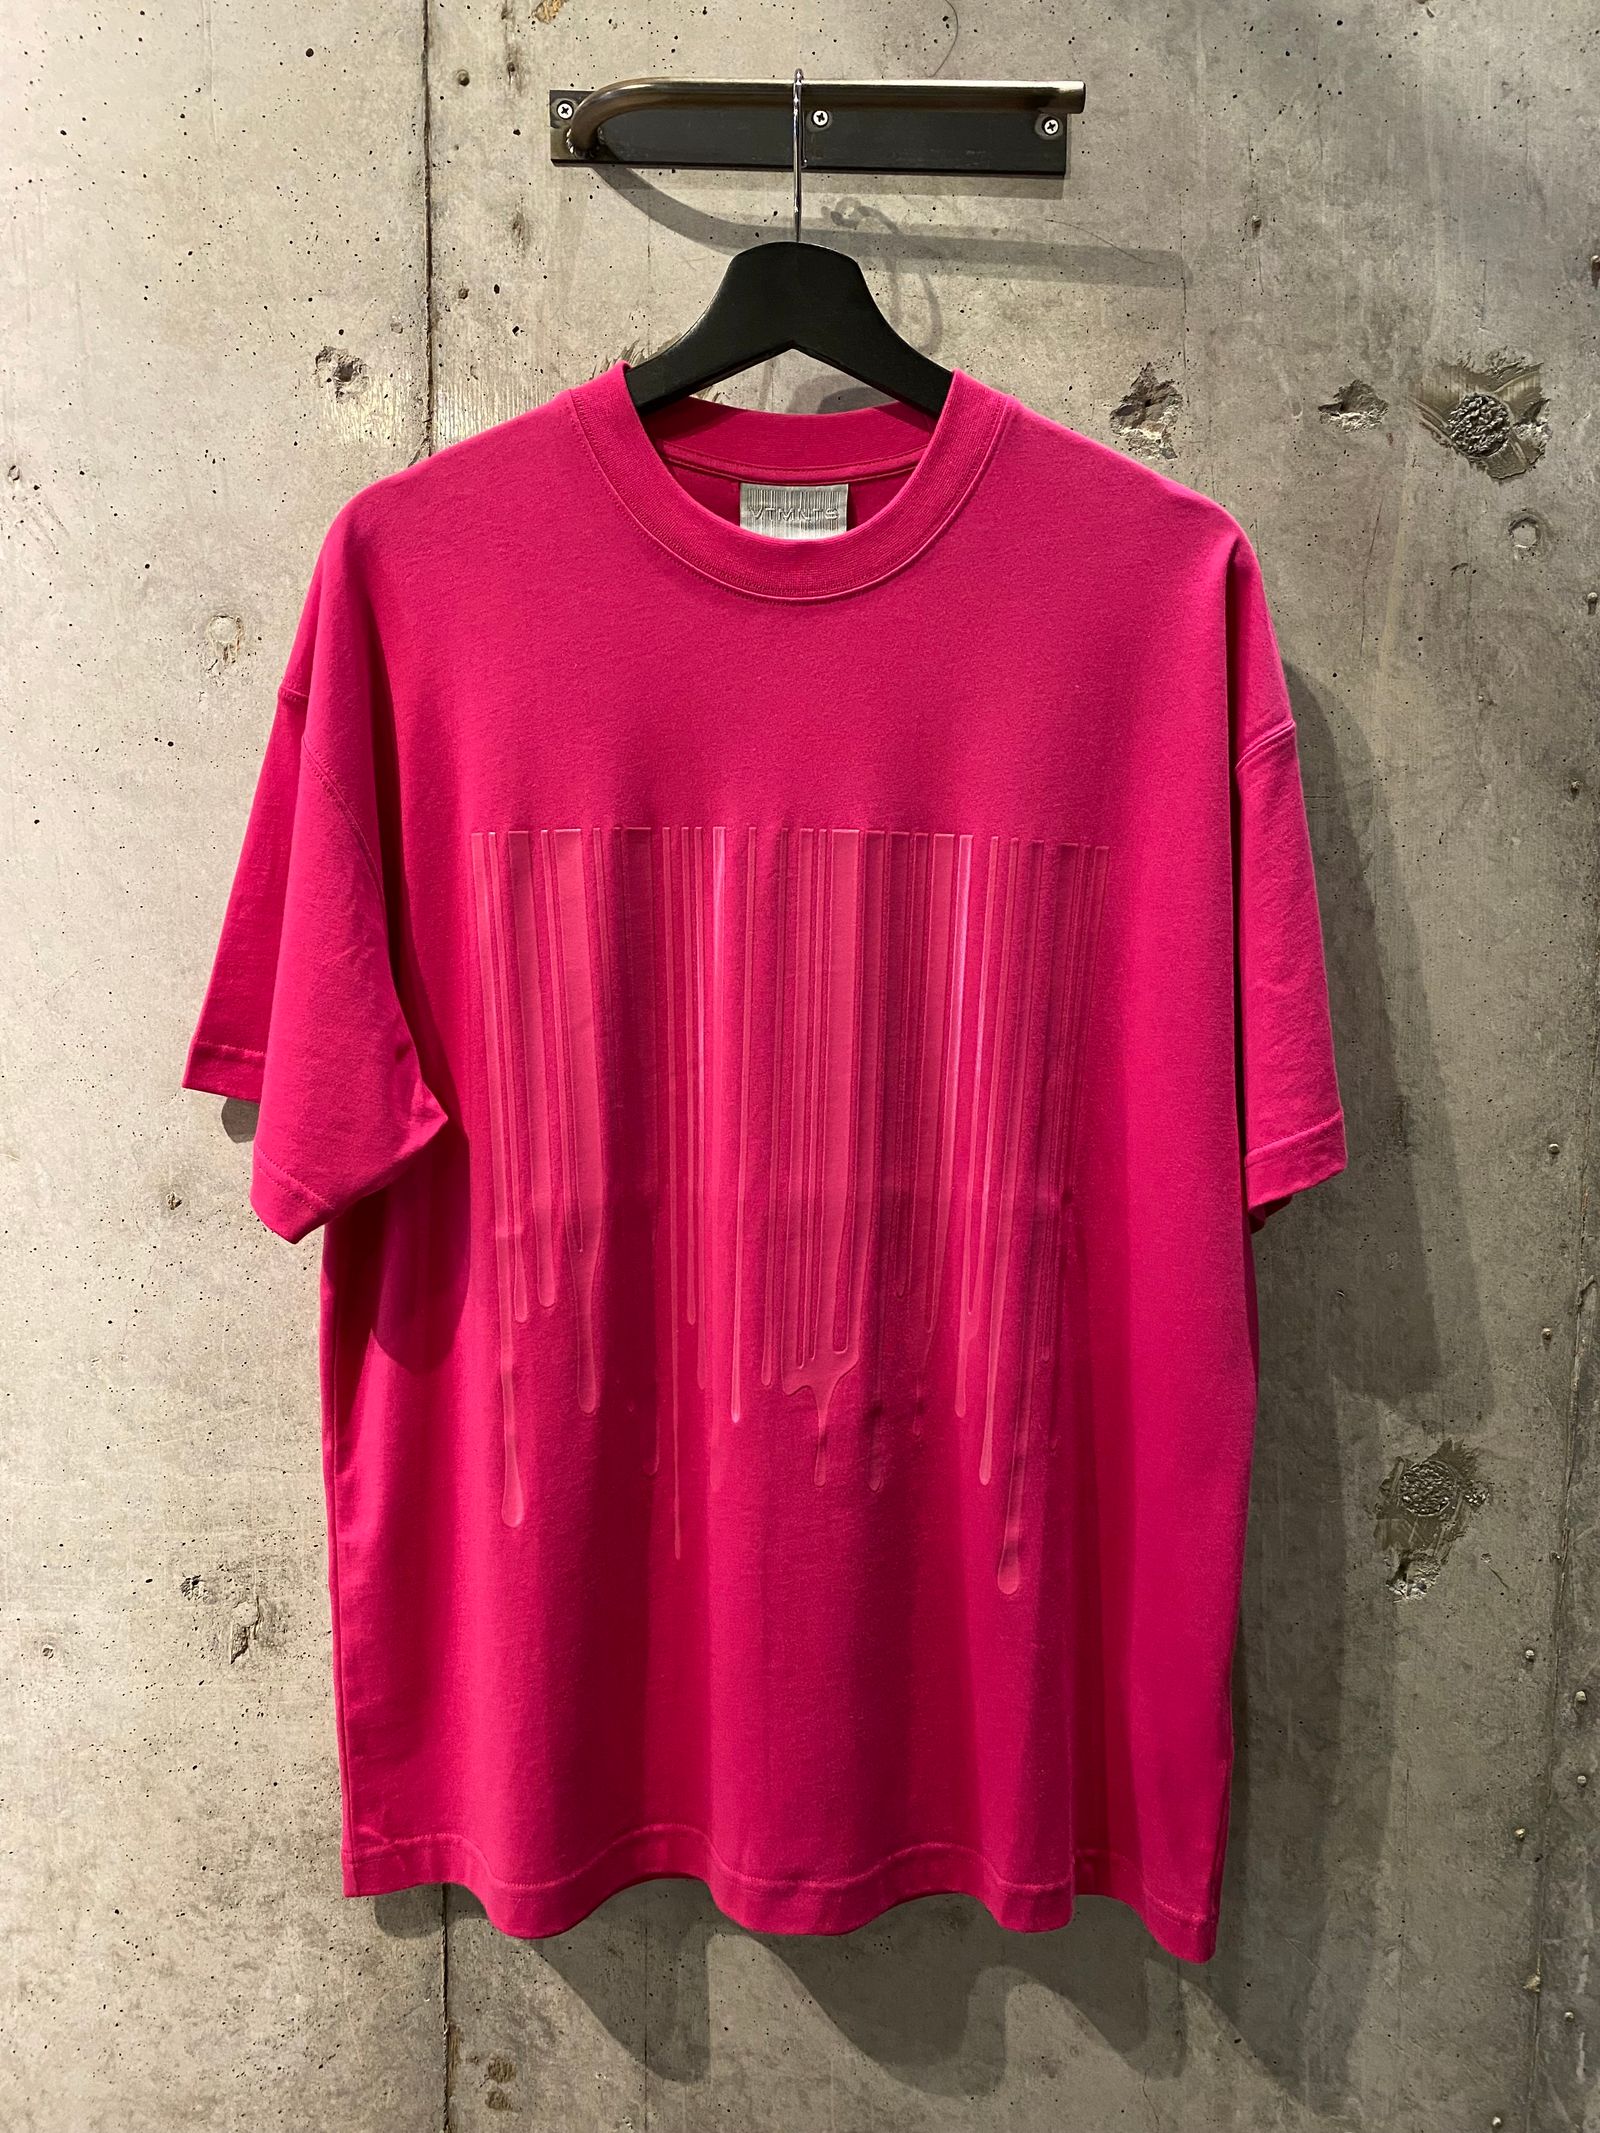 Tシャツ/カットソー(半袖/袖なし)ブイティーエムエヌティーエス VTMNTS VL14TR380B フロントロゴ刺繍Tシャツ メンズ XL